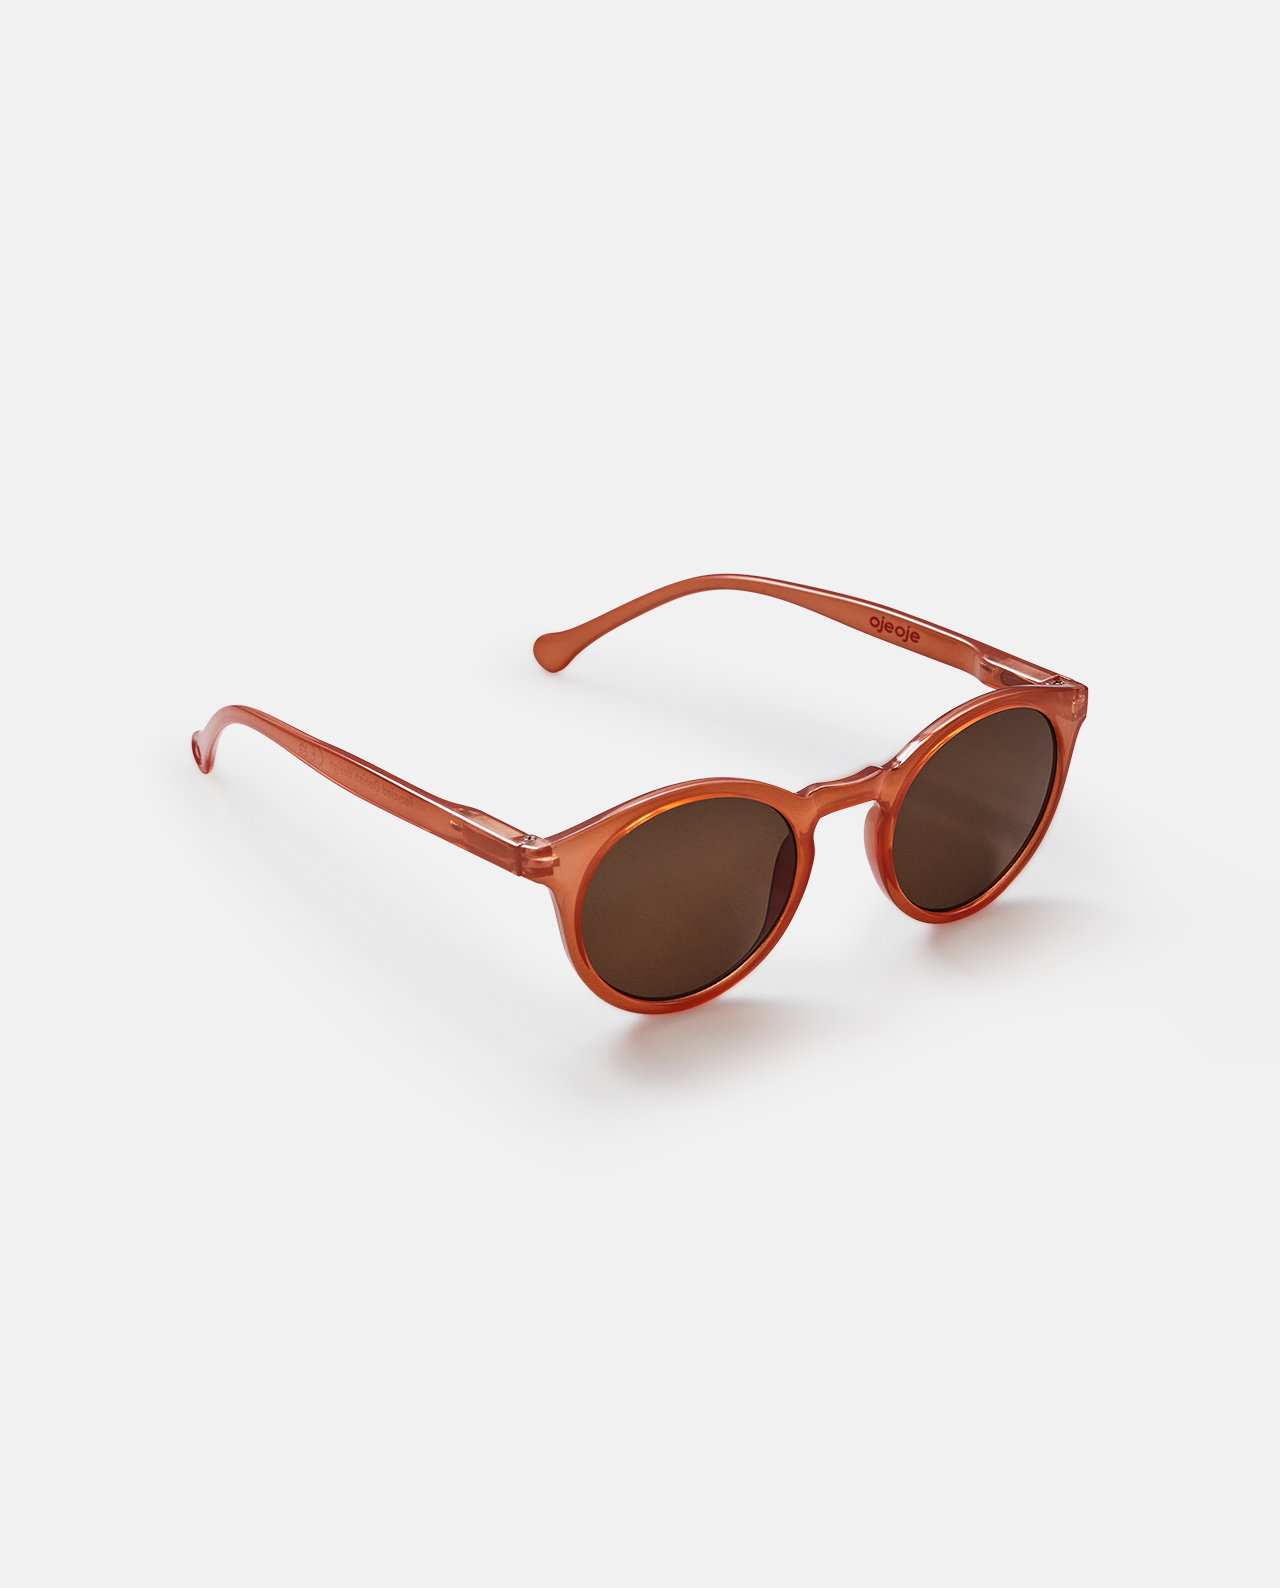 Solbriller fra OjeOje – Coral (Model A)